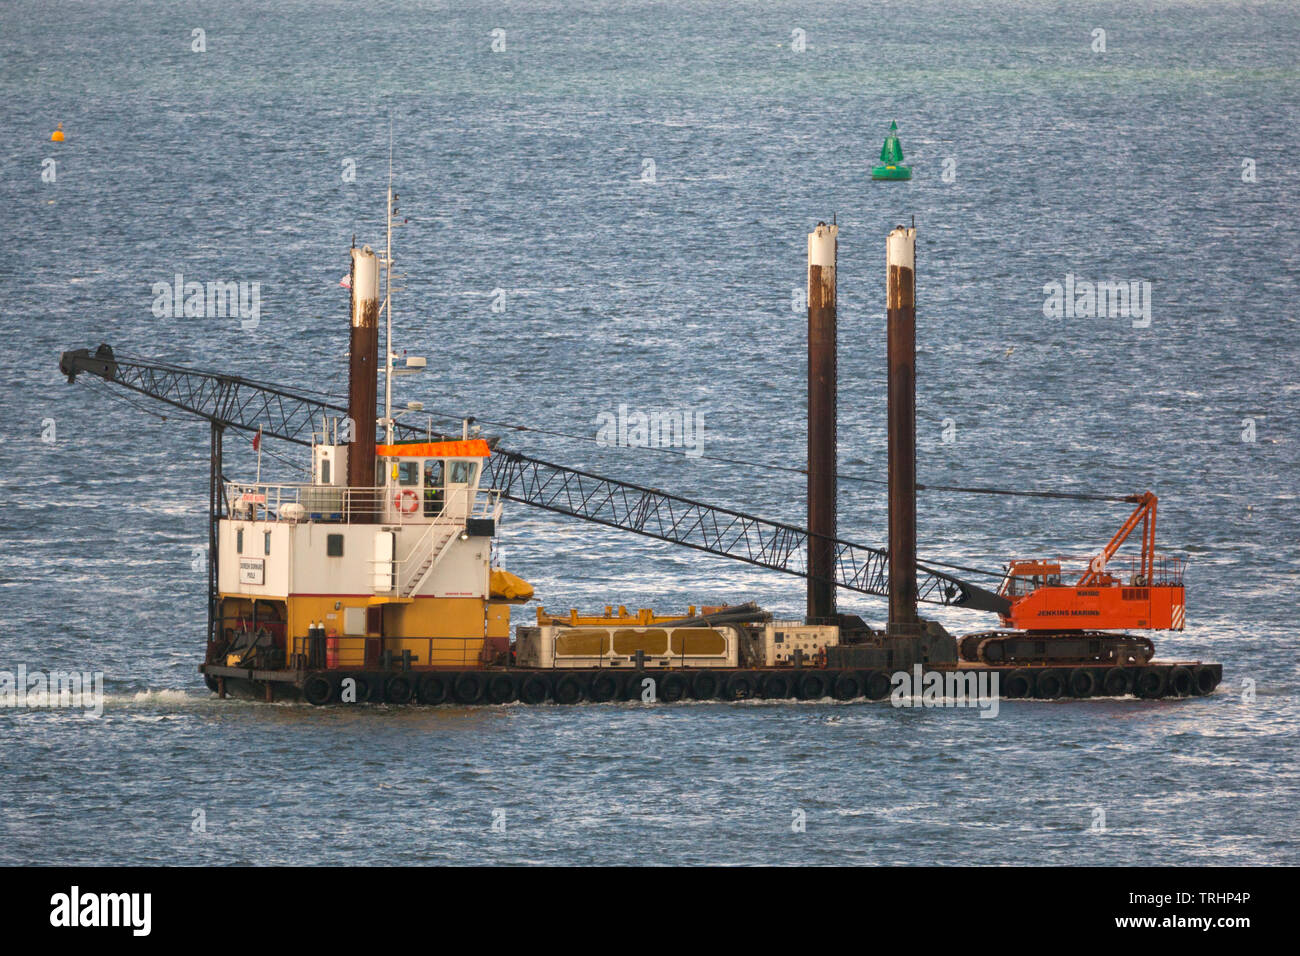 Barge,floating,crane,piles,satbilisers,stabilised,floating,Cowes, isle of Wight, England, UK, Stock Photo